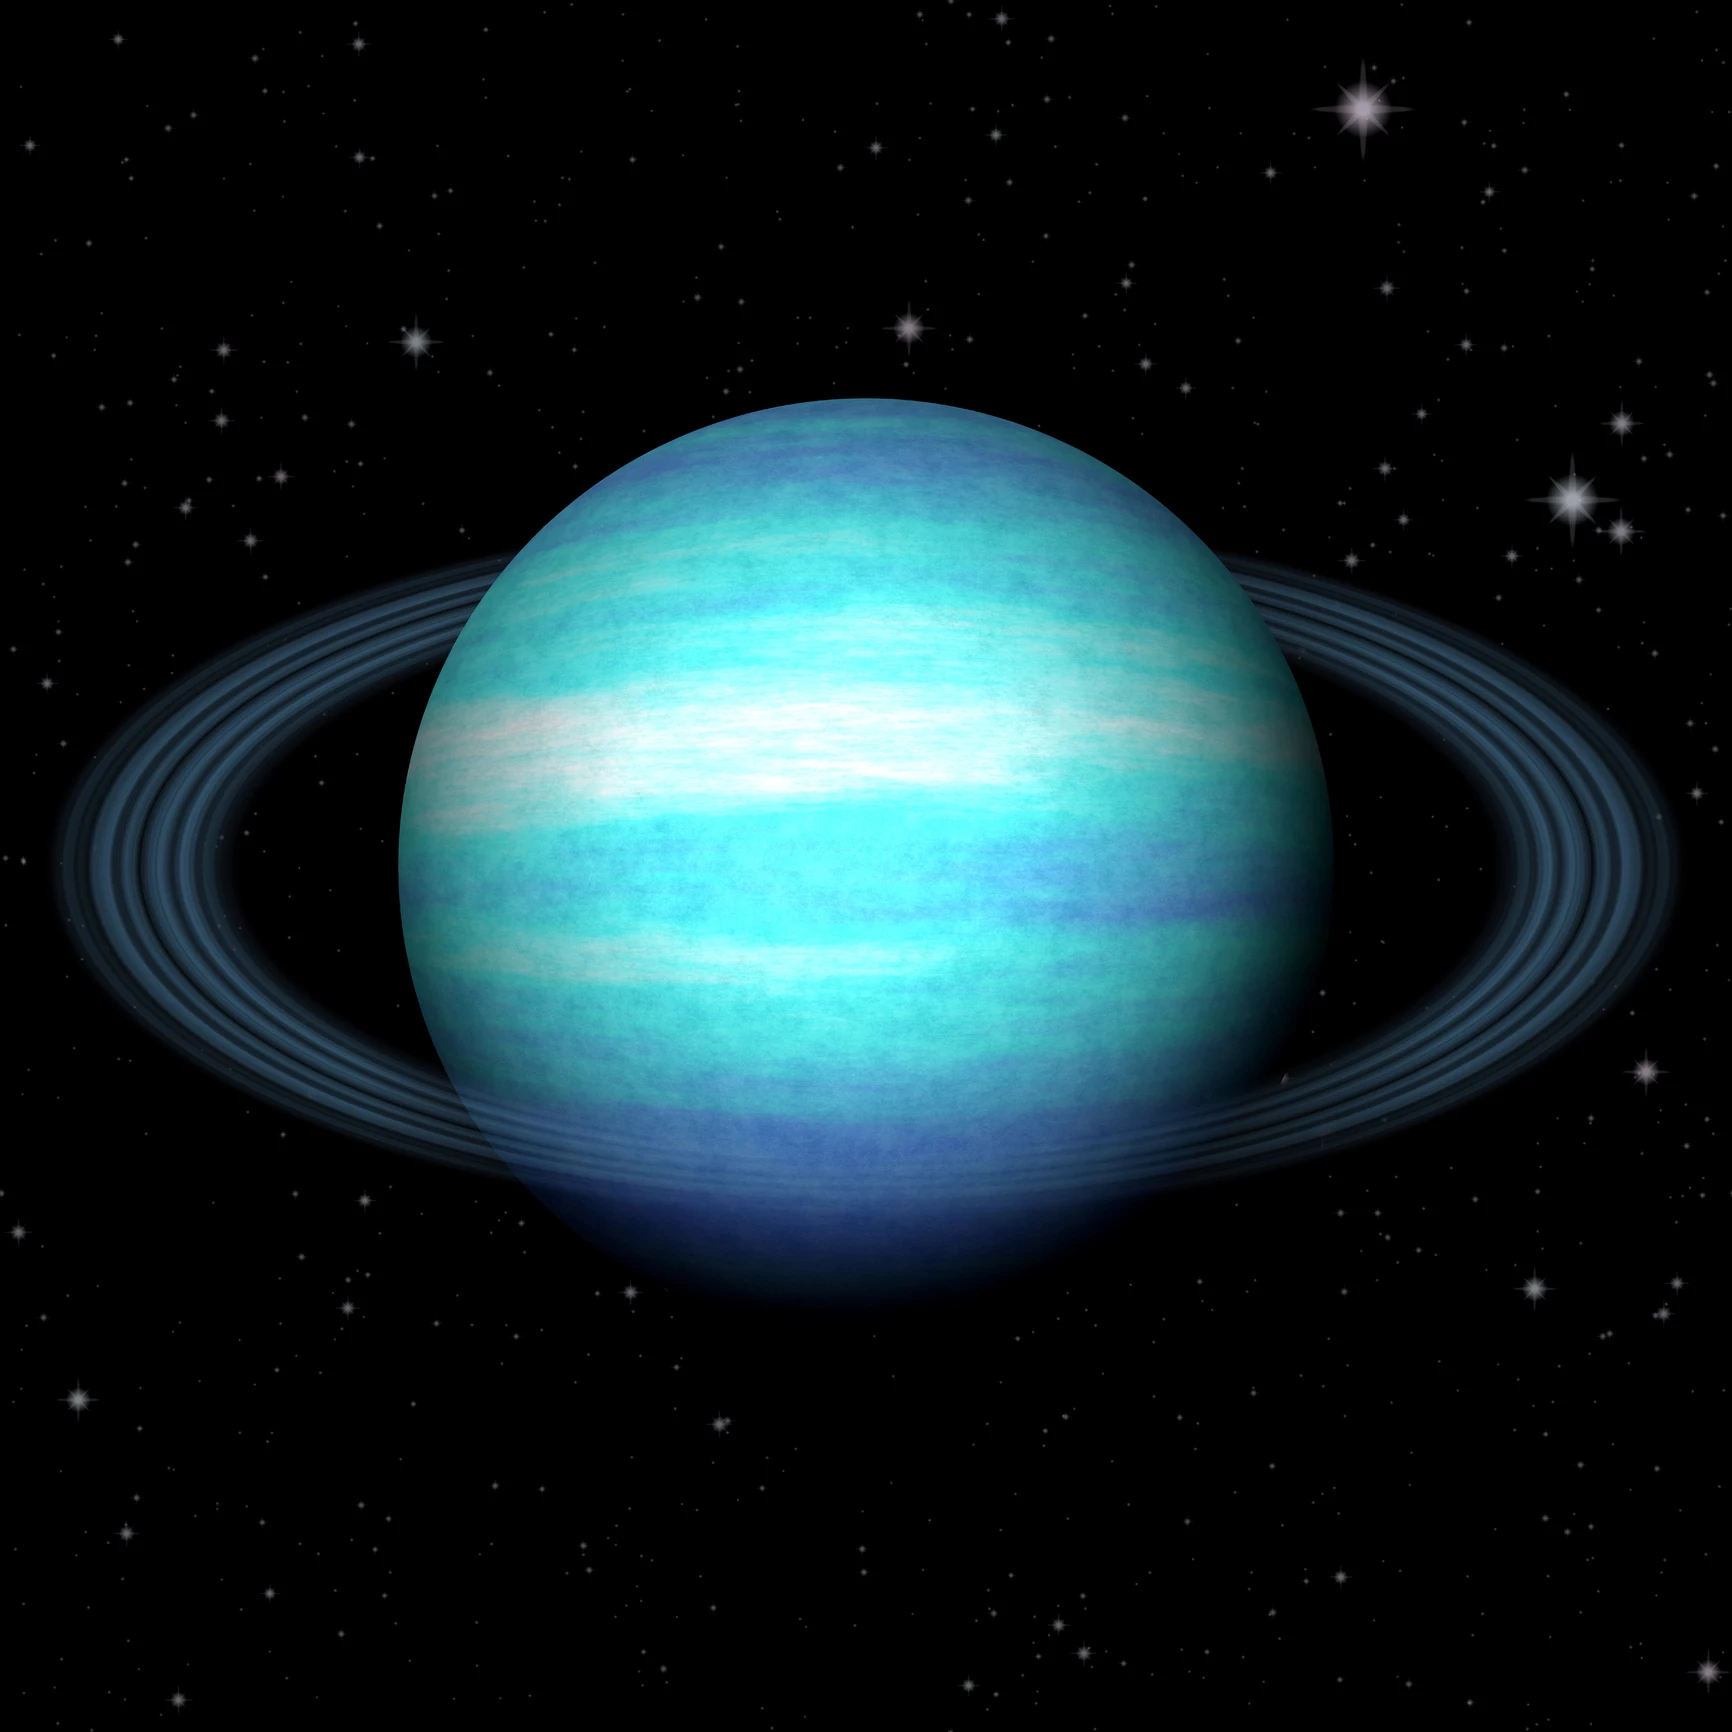 Is+life+possible+on+Uranus%3F